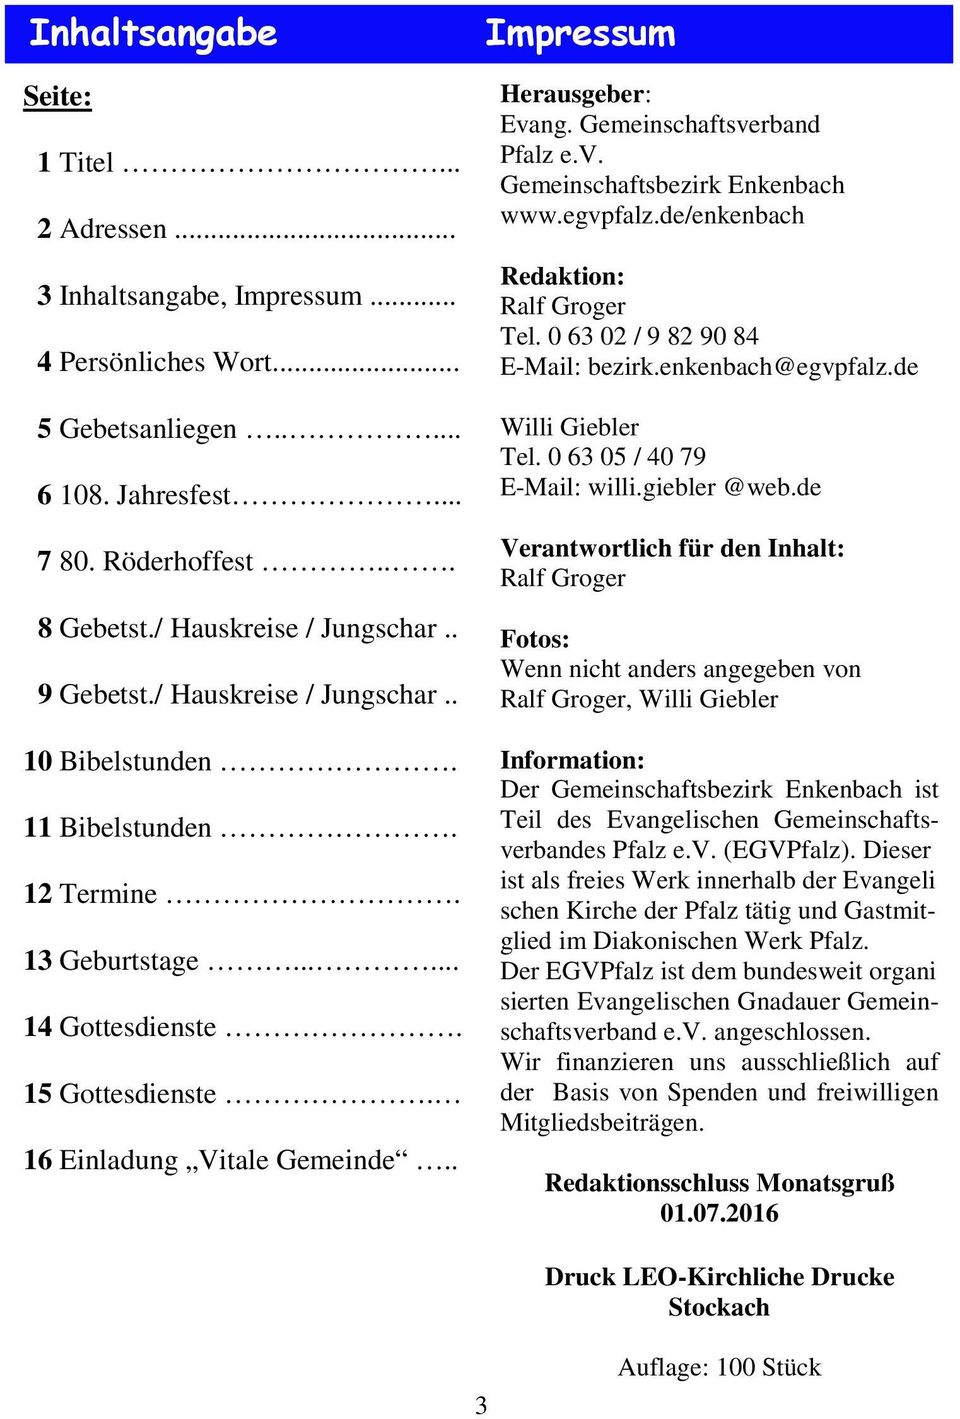 . Herausgeber: Evang. Gemeinschaftsverband Pfalz e.v. Gemeinschaftsbezirk Enkenbach www.egvpfalz.de/enkenbach Redaktion: Ralf Groger Tel. 0 63 02 / 9 82 90 84 E-Mail: bezirk.enkenbach@egvpfalz.